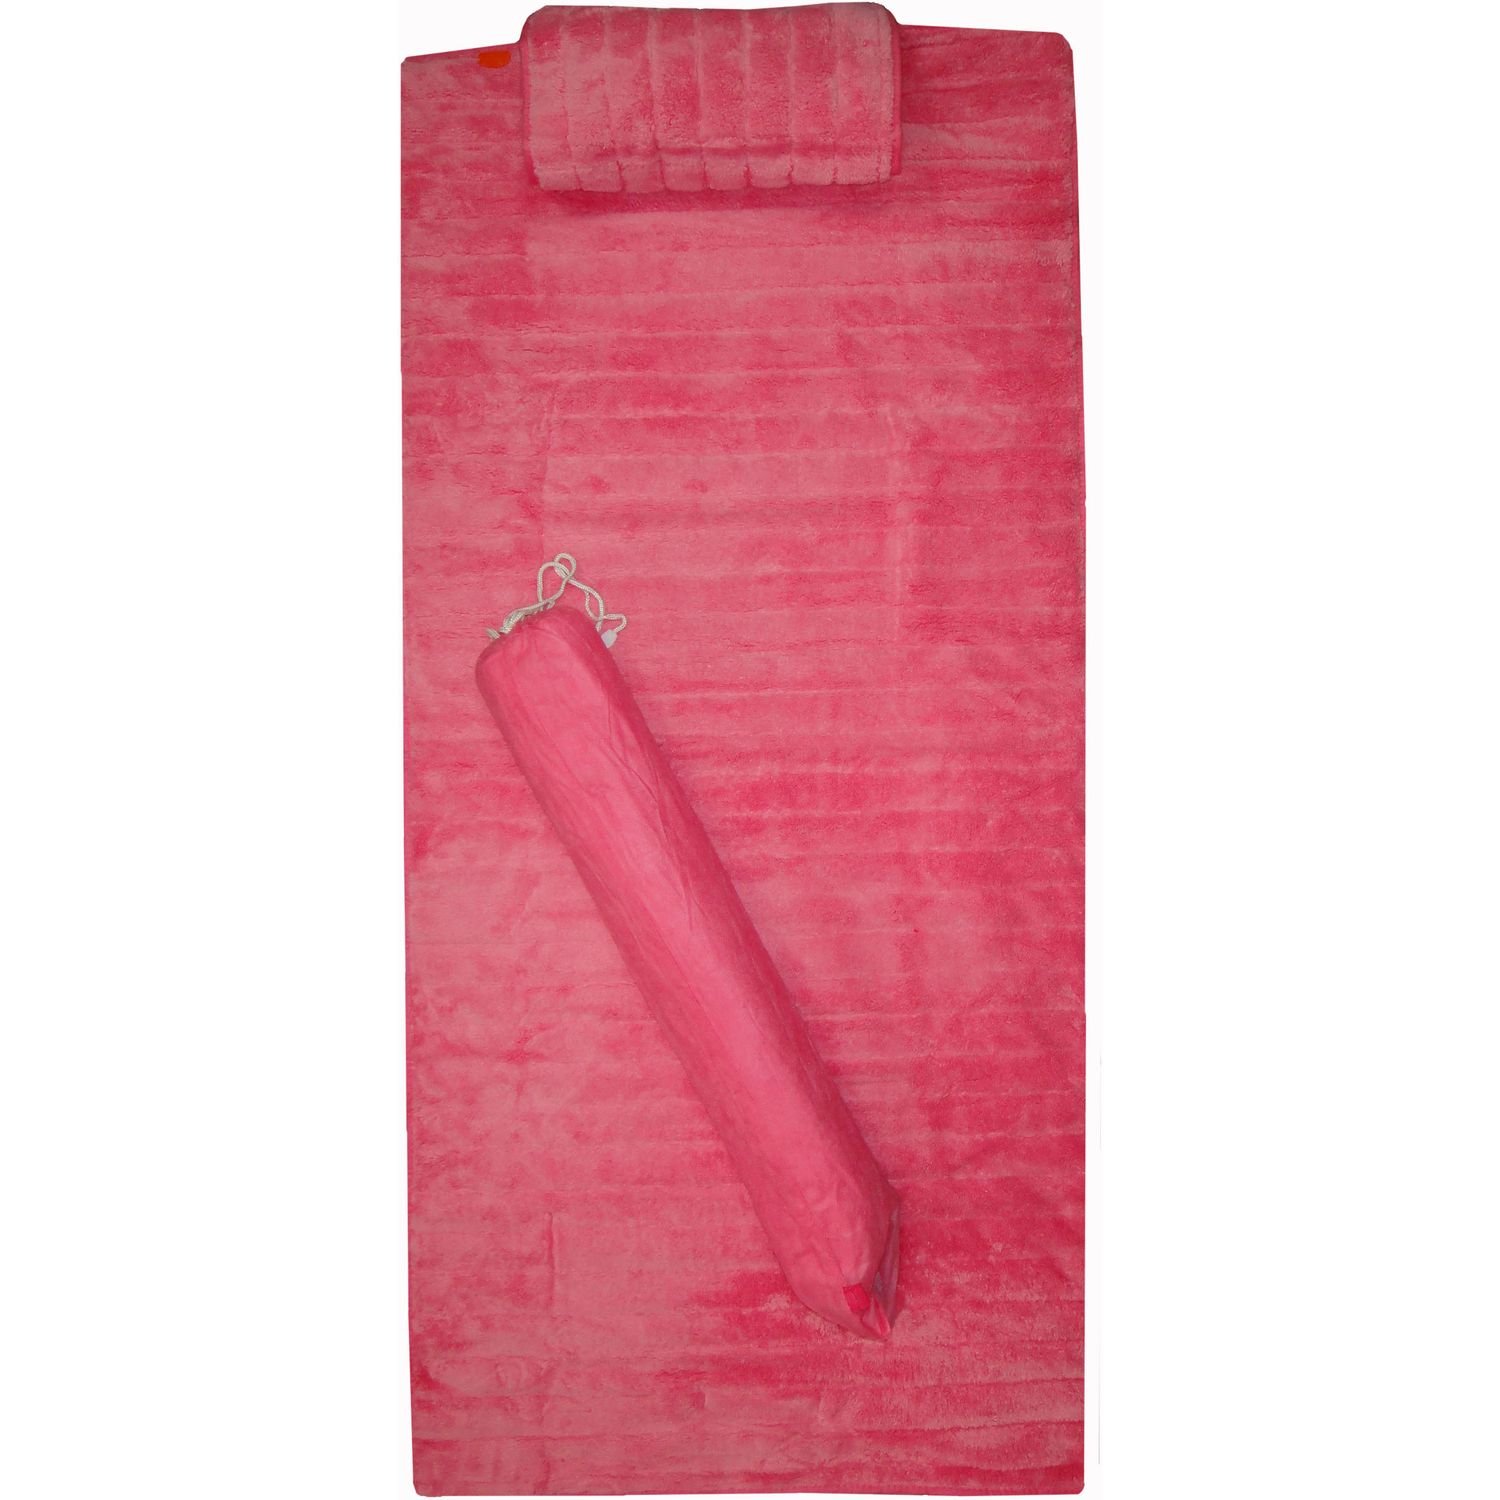 Килимок для пляжу Love You VIP, 150х80 см, рожевий (1461) - фото 1